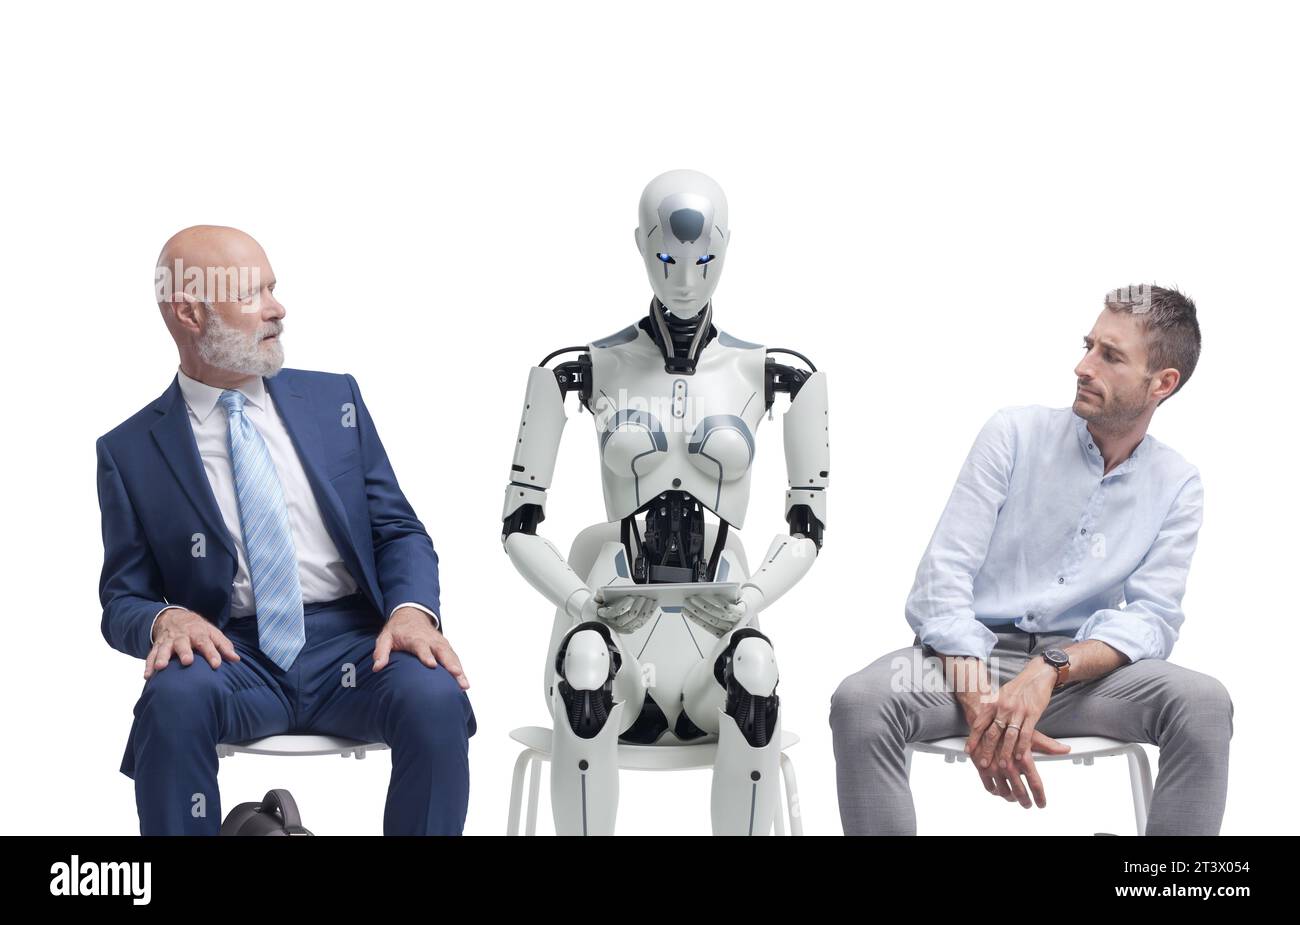 Les candidats déçus assis dans la salle d'attente et regardant le candidat robot IA, ils attendent l'entretien d'embauche Banque D'Images